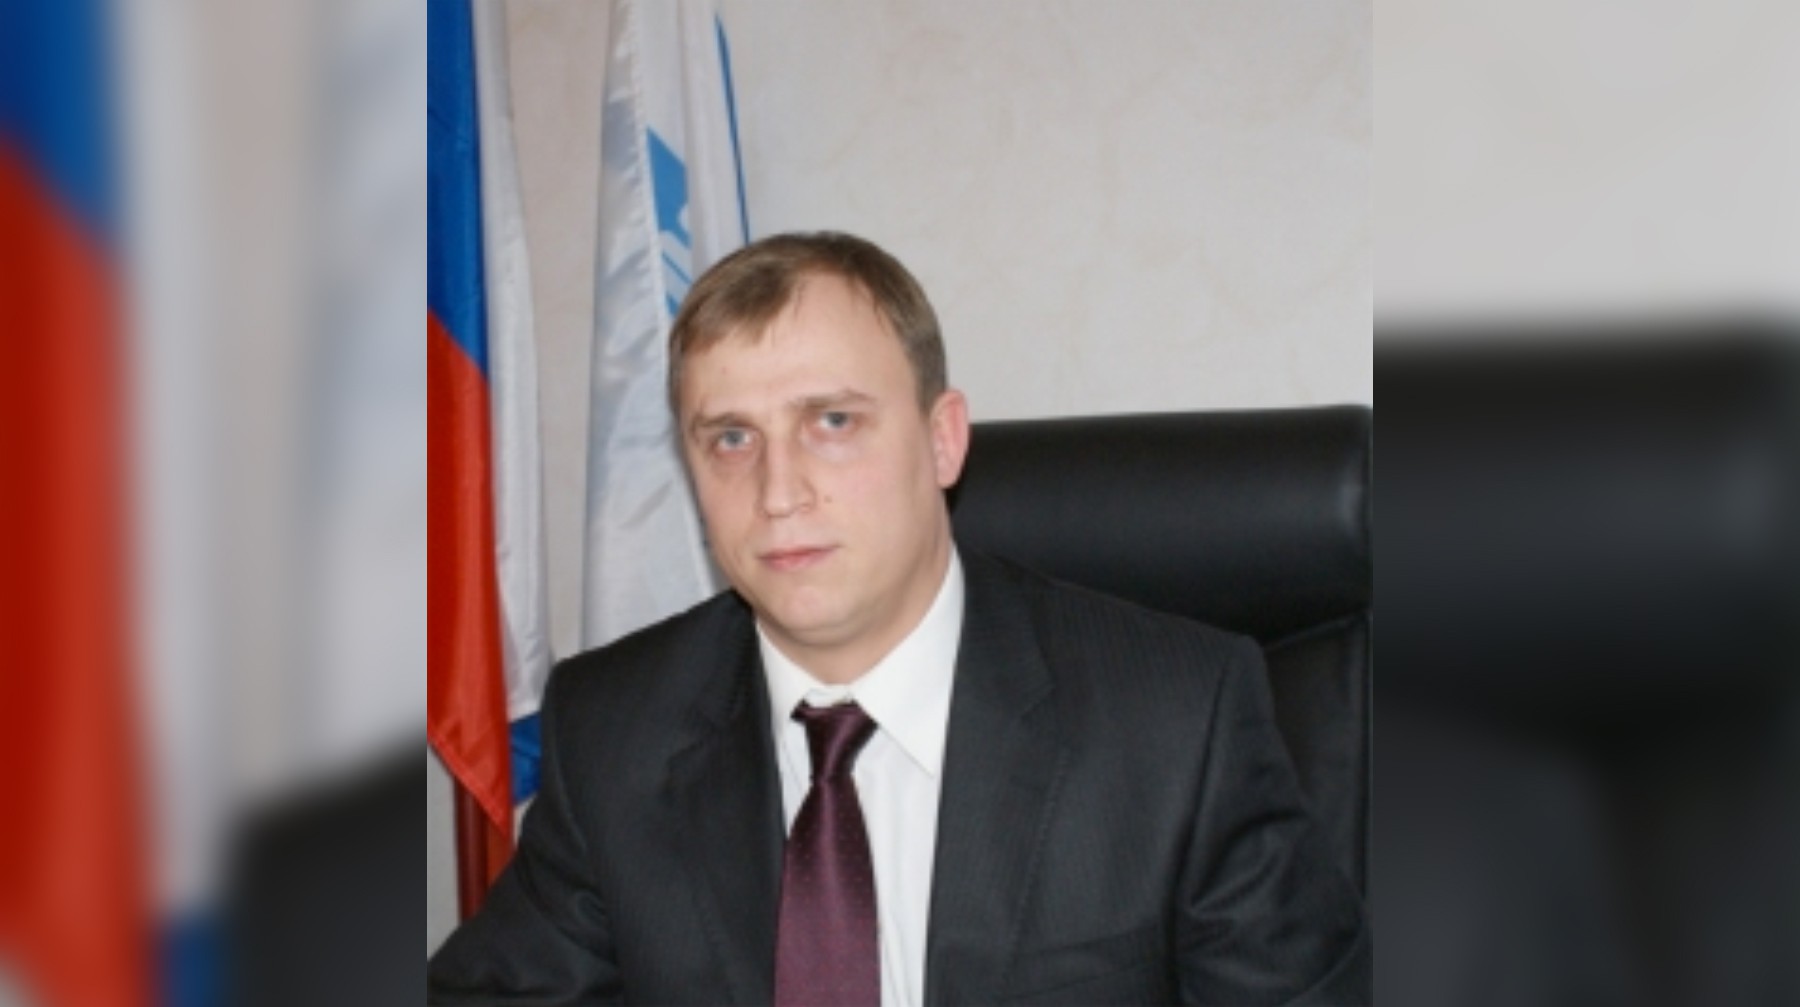 Dailystorm - Депутат посоветовал безработным образованным «белоручкам» идти убирать улицы